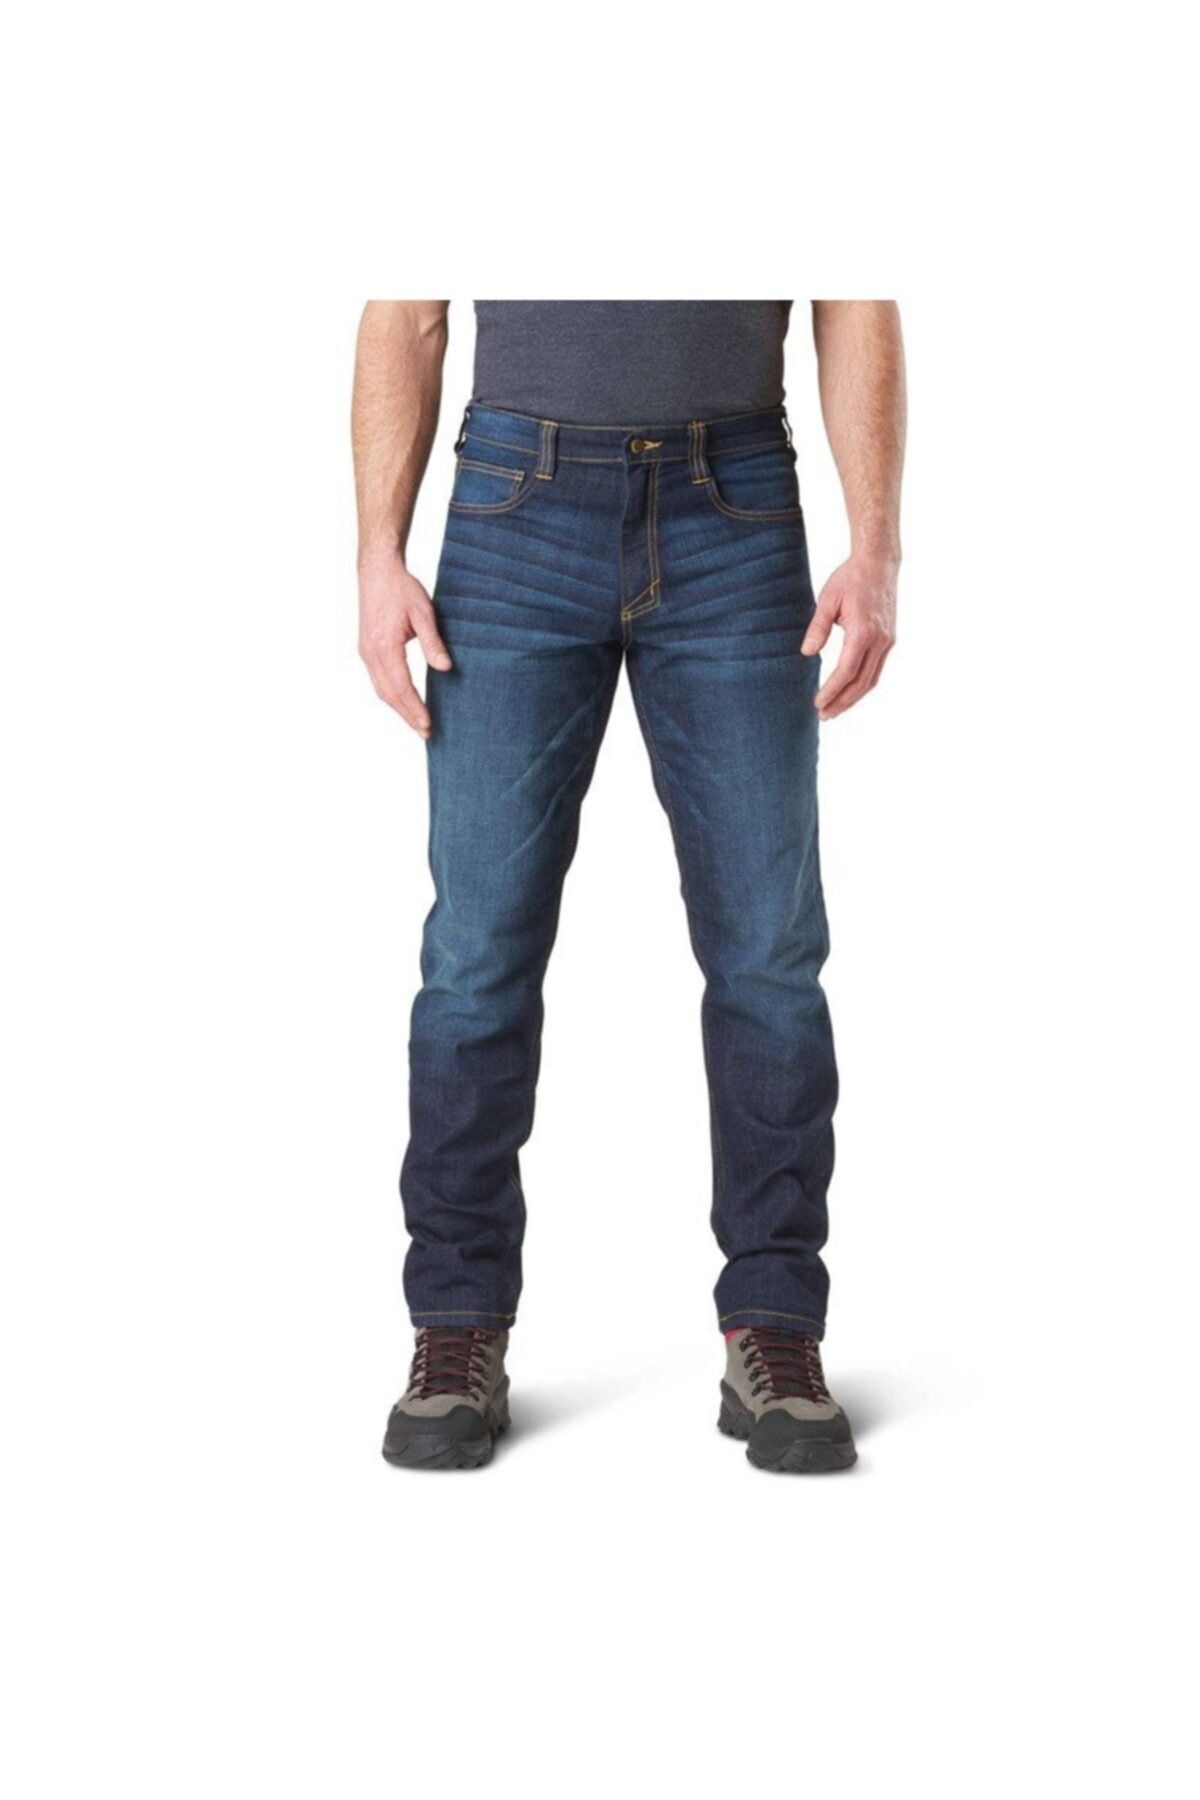 5.11 Tactical 5.11 Defender-flex Erkek Mavi Pantolon Jean-slım